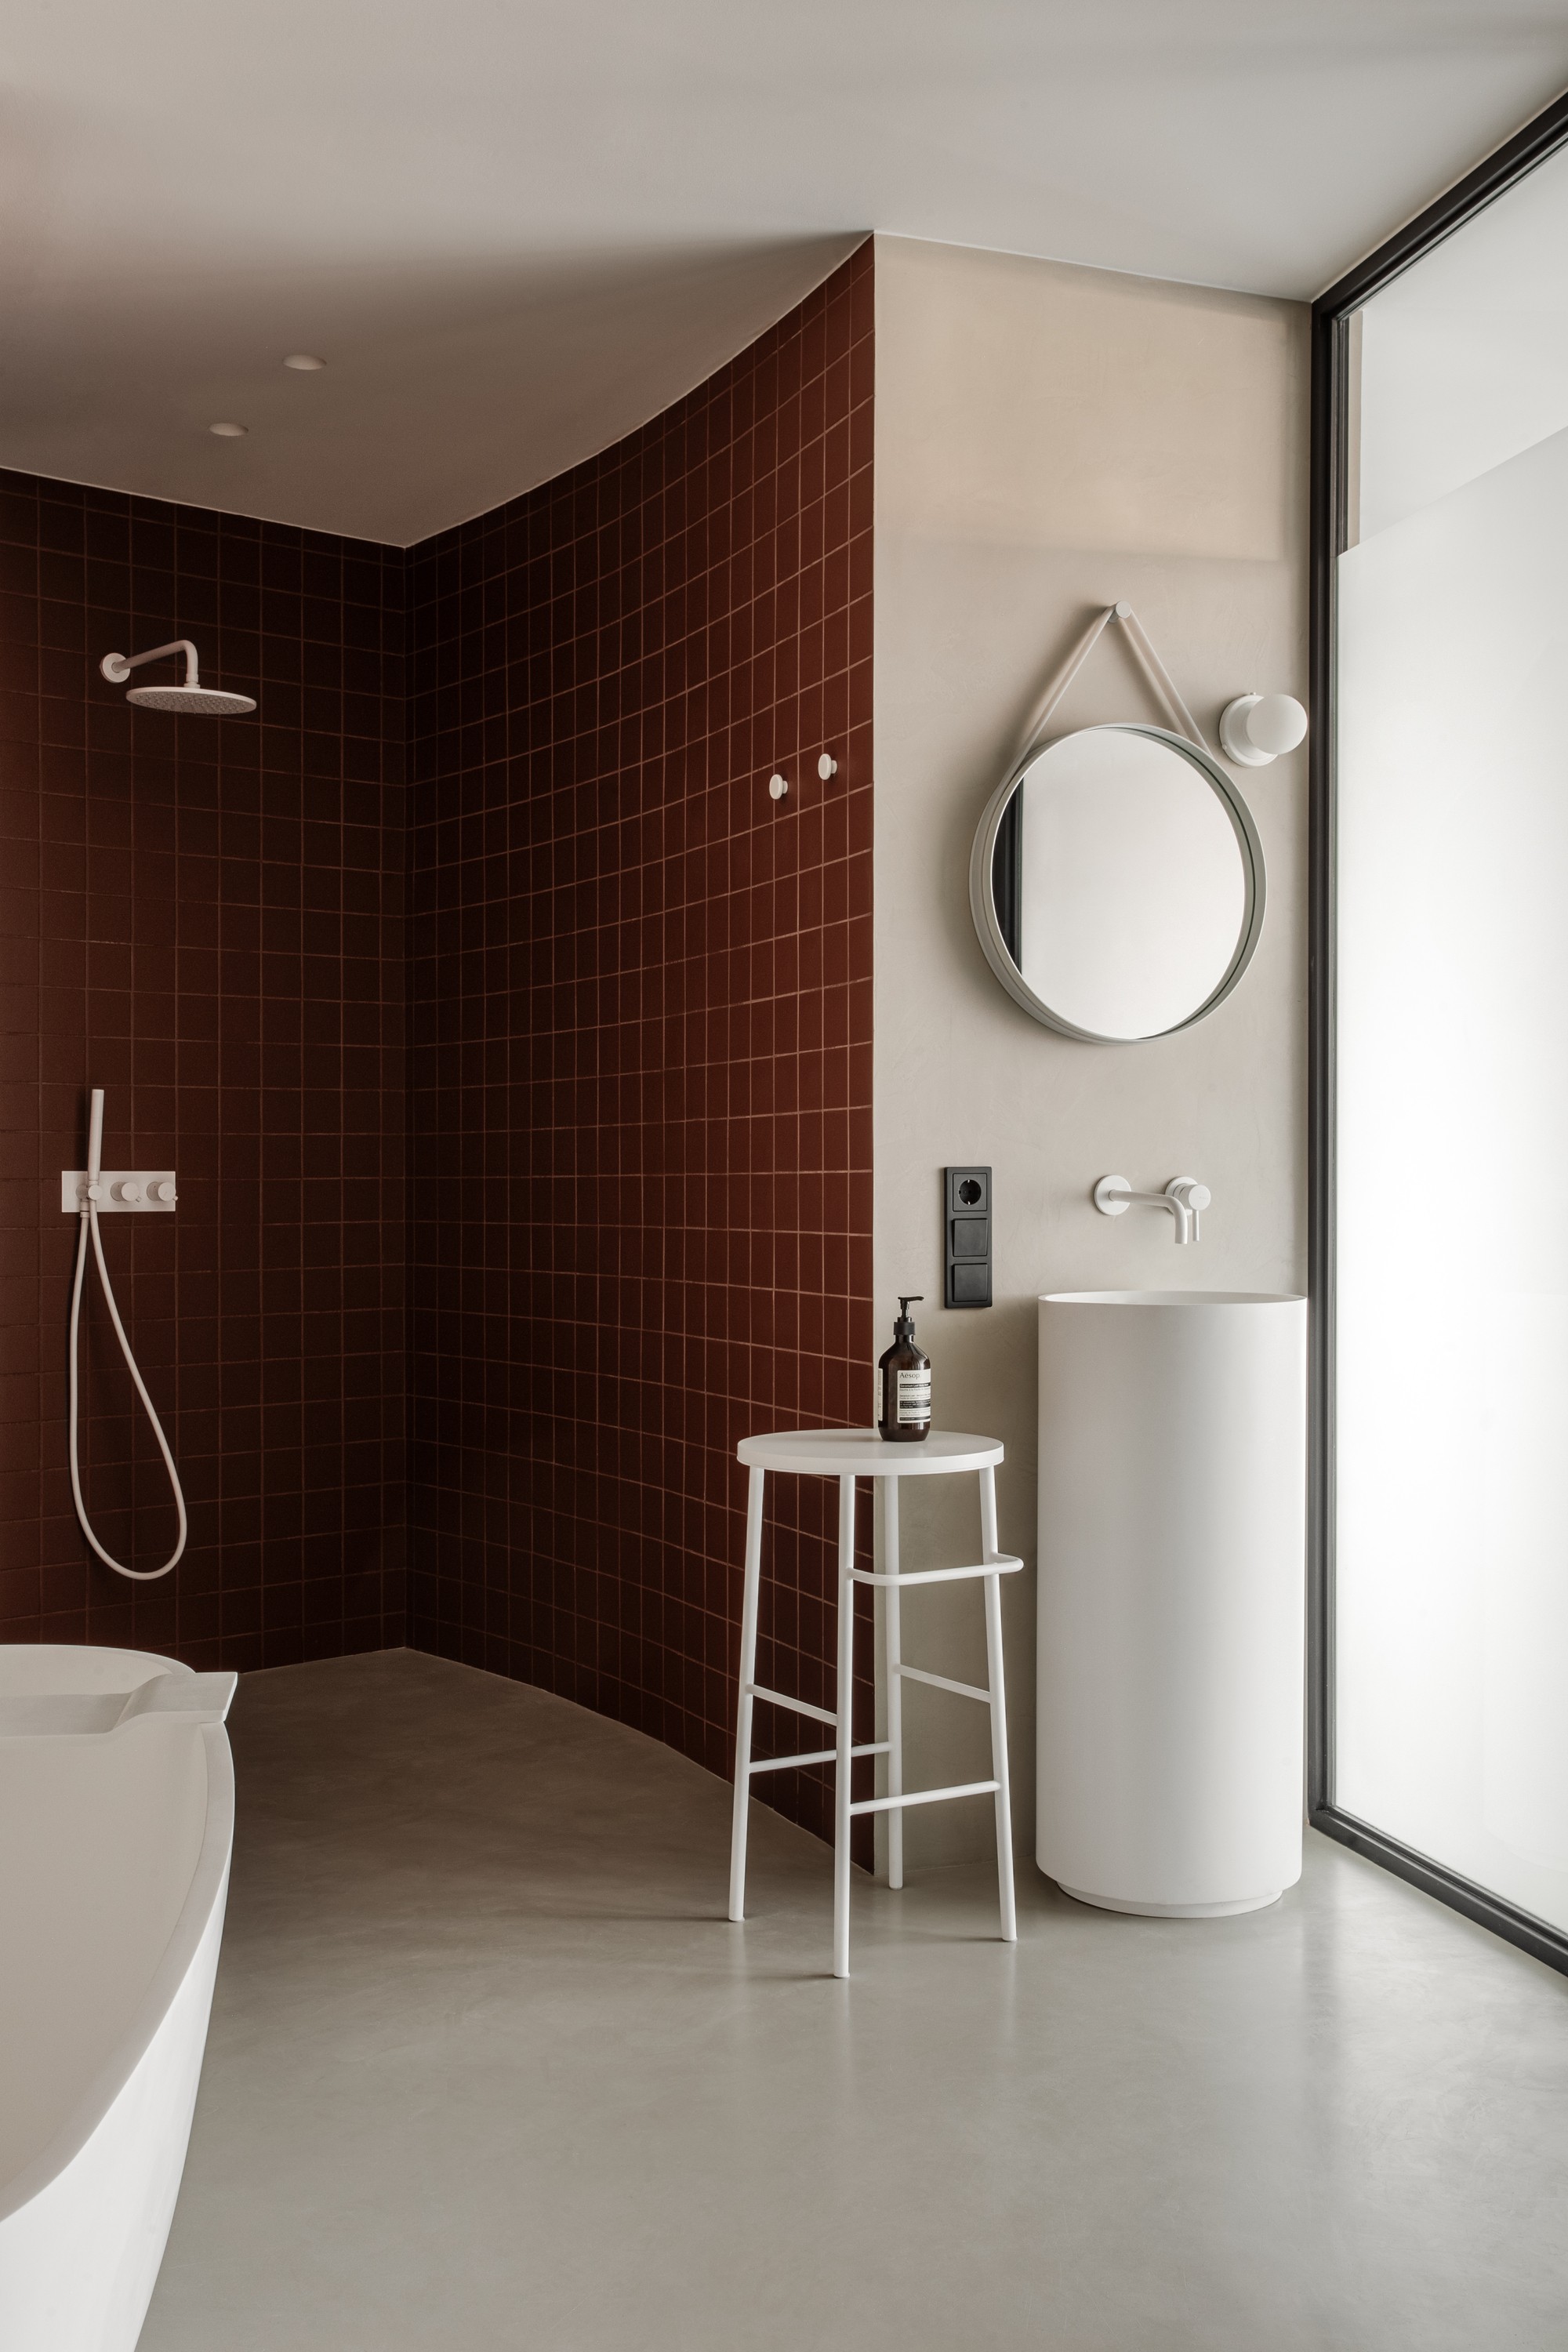 Décor do dia: banheiro com estilo minimalista e azulejo colorido (Foto: Divulgação)